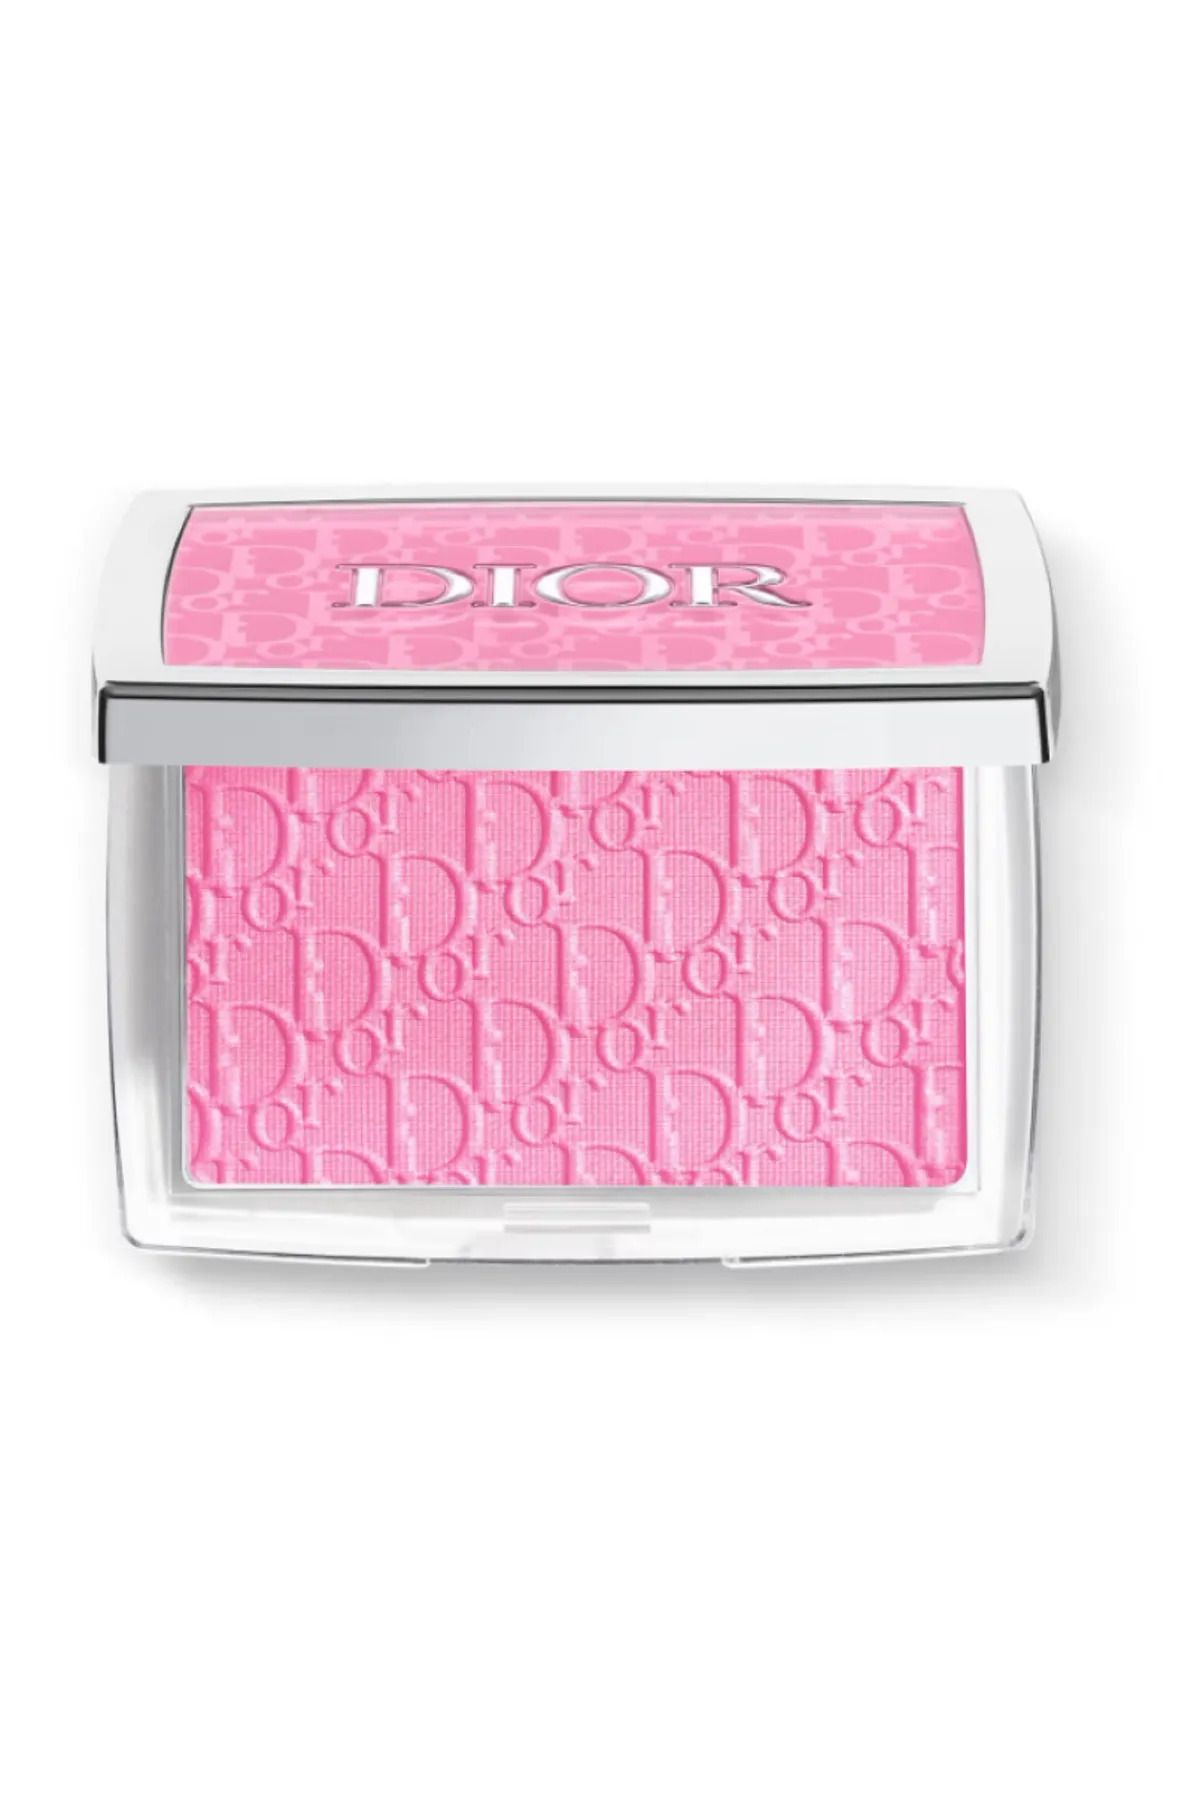 Dior Rosy Glow - Allık 4,4 gr Onrness Cosmetıc